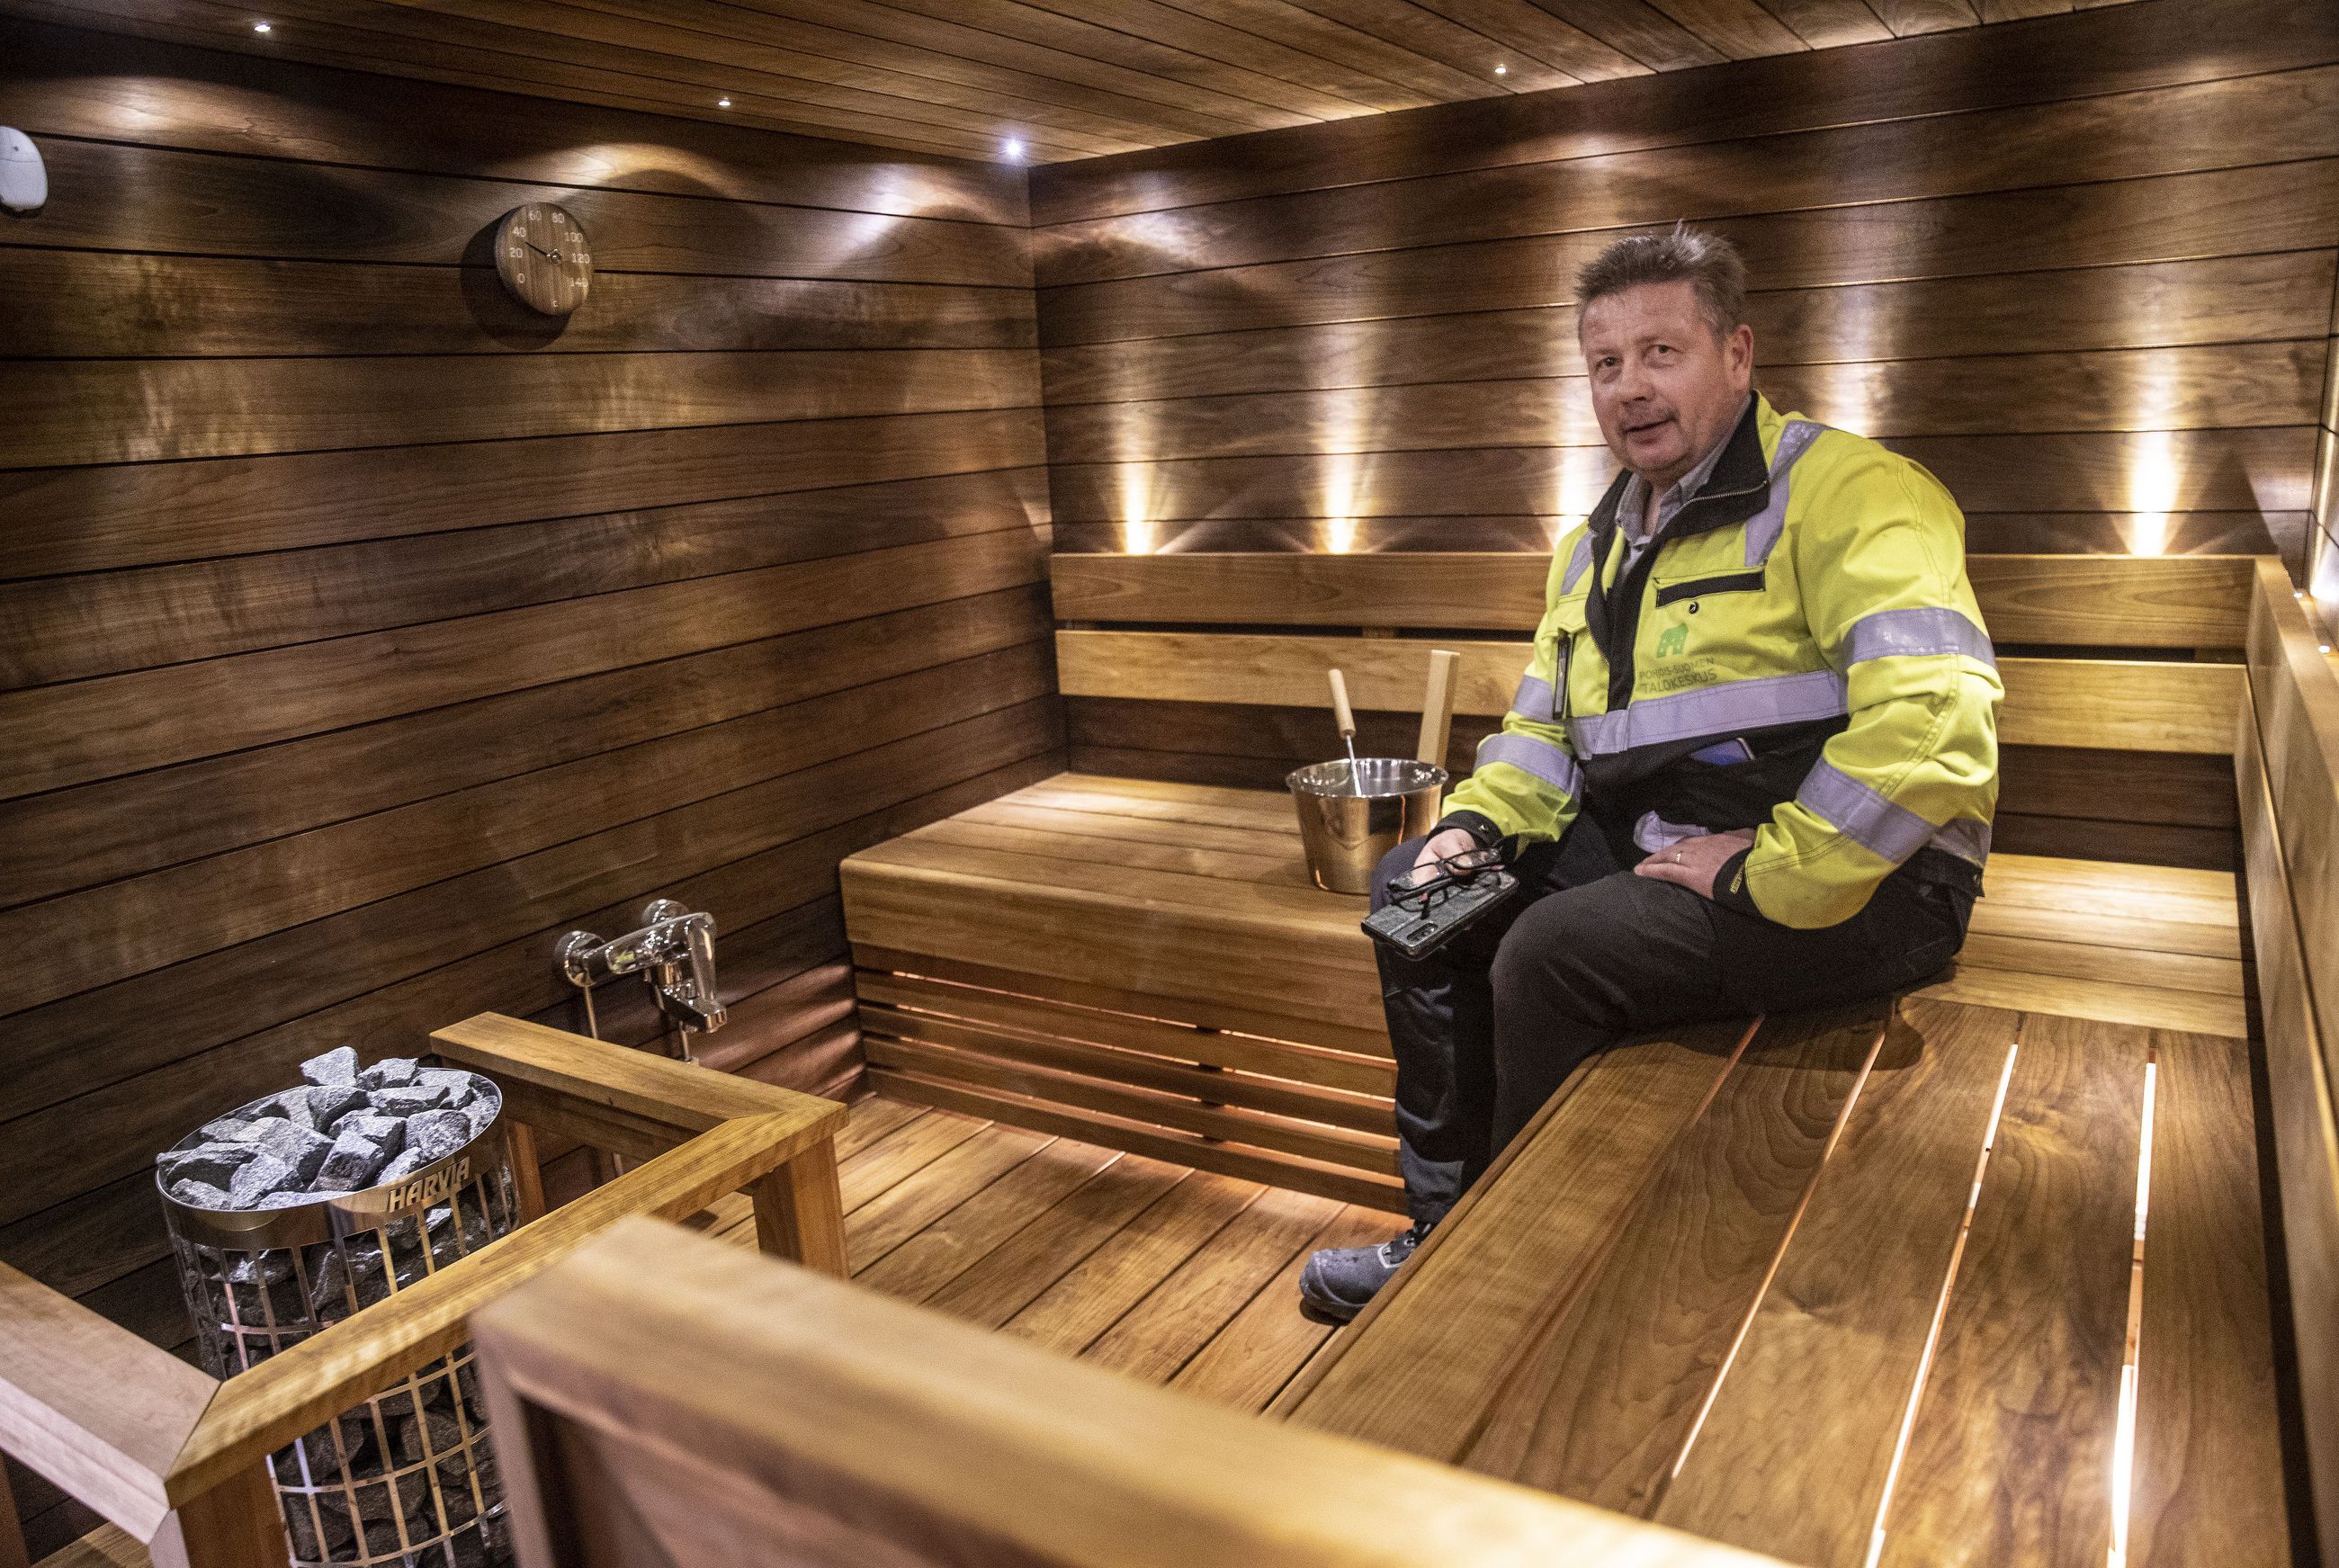 Sauna jää taloyhtiöissä usein viimeiseksi remonttikohteeksi – korona-aika  on lisännyt yhteissaunojen arvostusta, Kiinteistöliitossa uskotaan | Kaleva